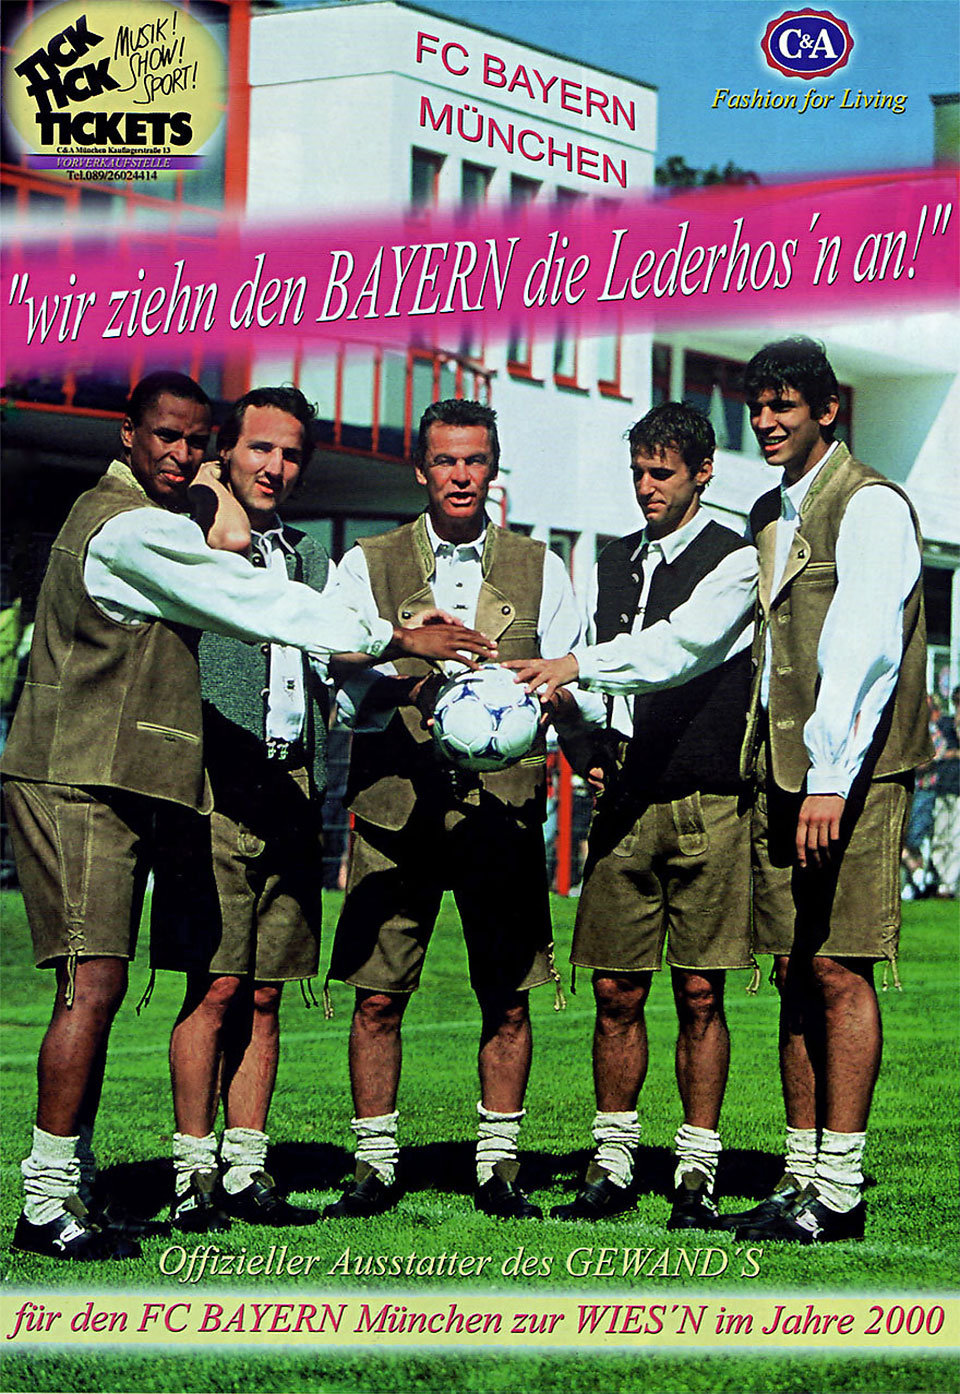 Werbefoto für einen doppelseitigen Werbeprospekt zur C&A Werbekampagne „Wir ziehen den Bayern die Lederhos`n an!“ als offizieller Ausstatter des Gewand`s für den FC Bayern München zur Wiesn im Jahre 2000,  v. l. im Foto abgebildet sind Spieler und Trainer wie folgt: Paulo Sérgio (Rechtsaußen), Jens Jeremies (Defensives Mittelfeld), Ottmar Hitzfeld (Trainer), Mehmet Scholl (Offensives/Linkes Mittelfeld),
Roque Santa Cruz (Stürmer)